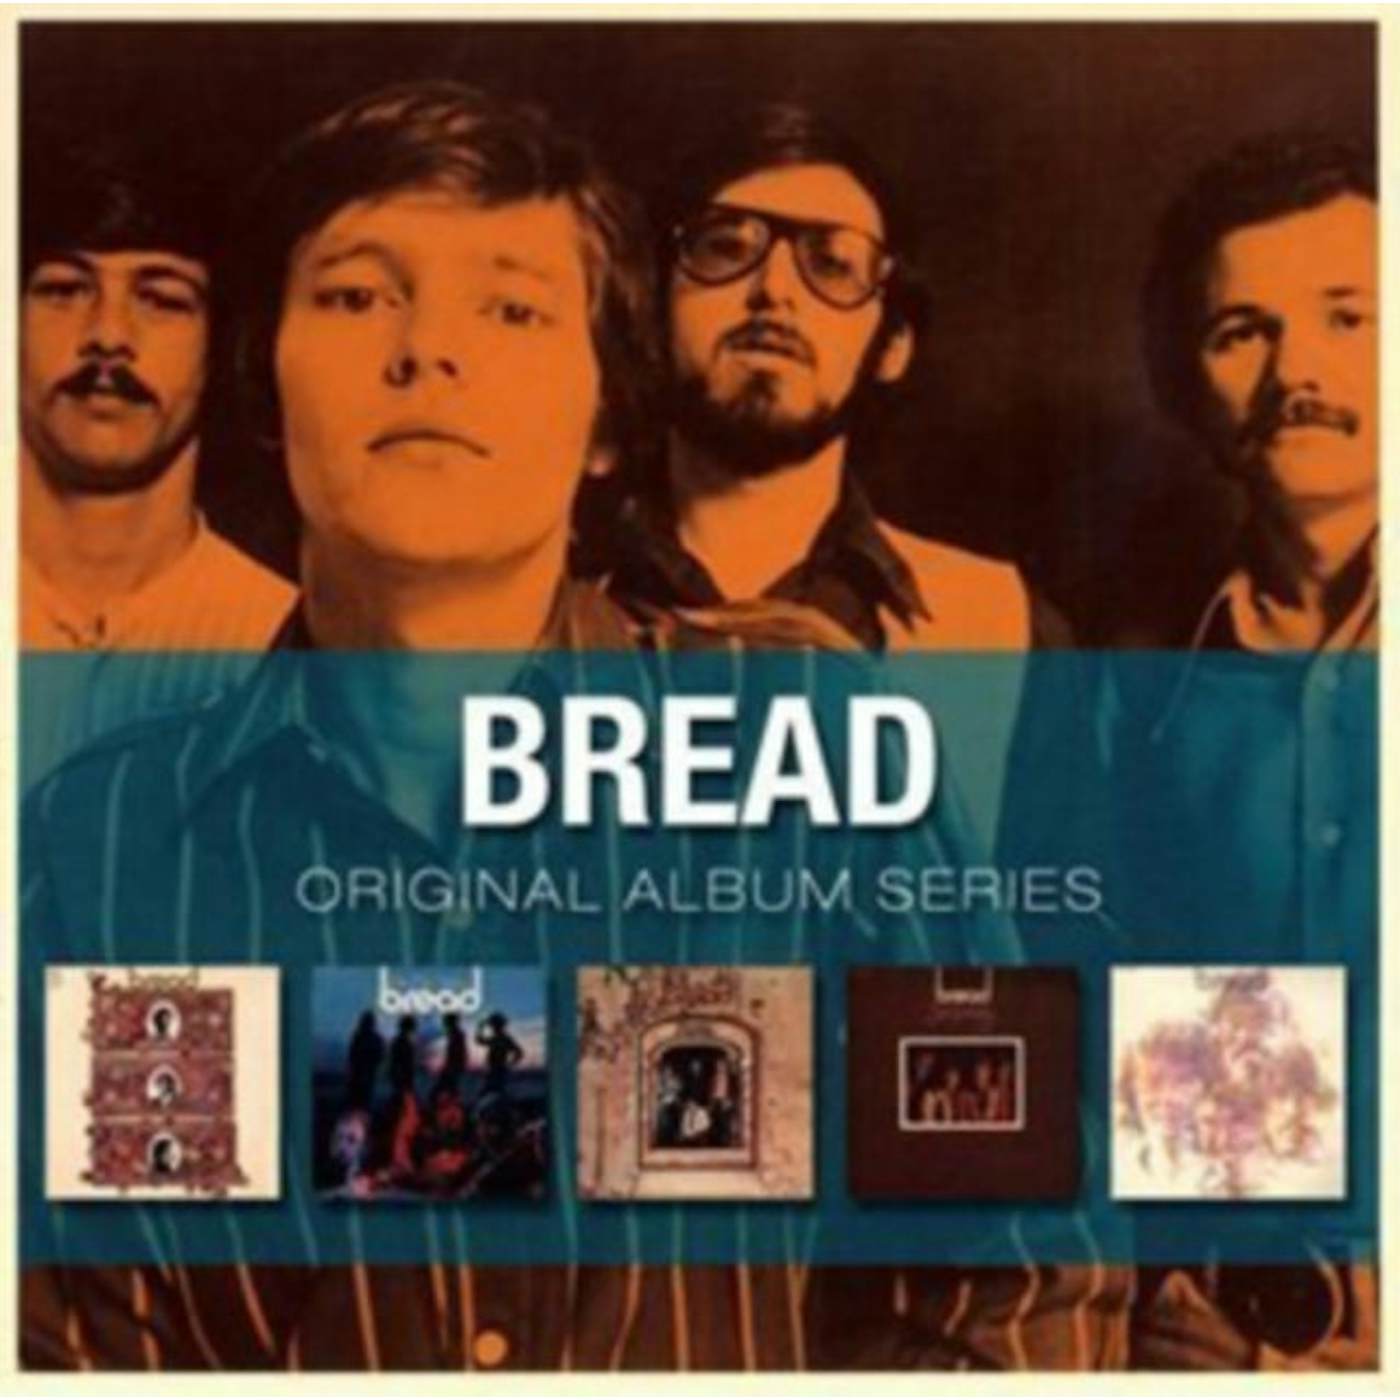 Bread CD - Original Album Series